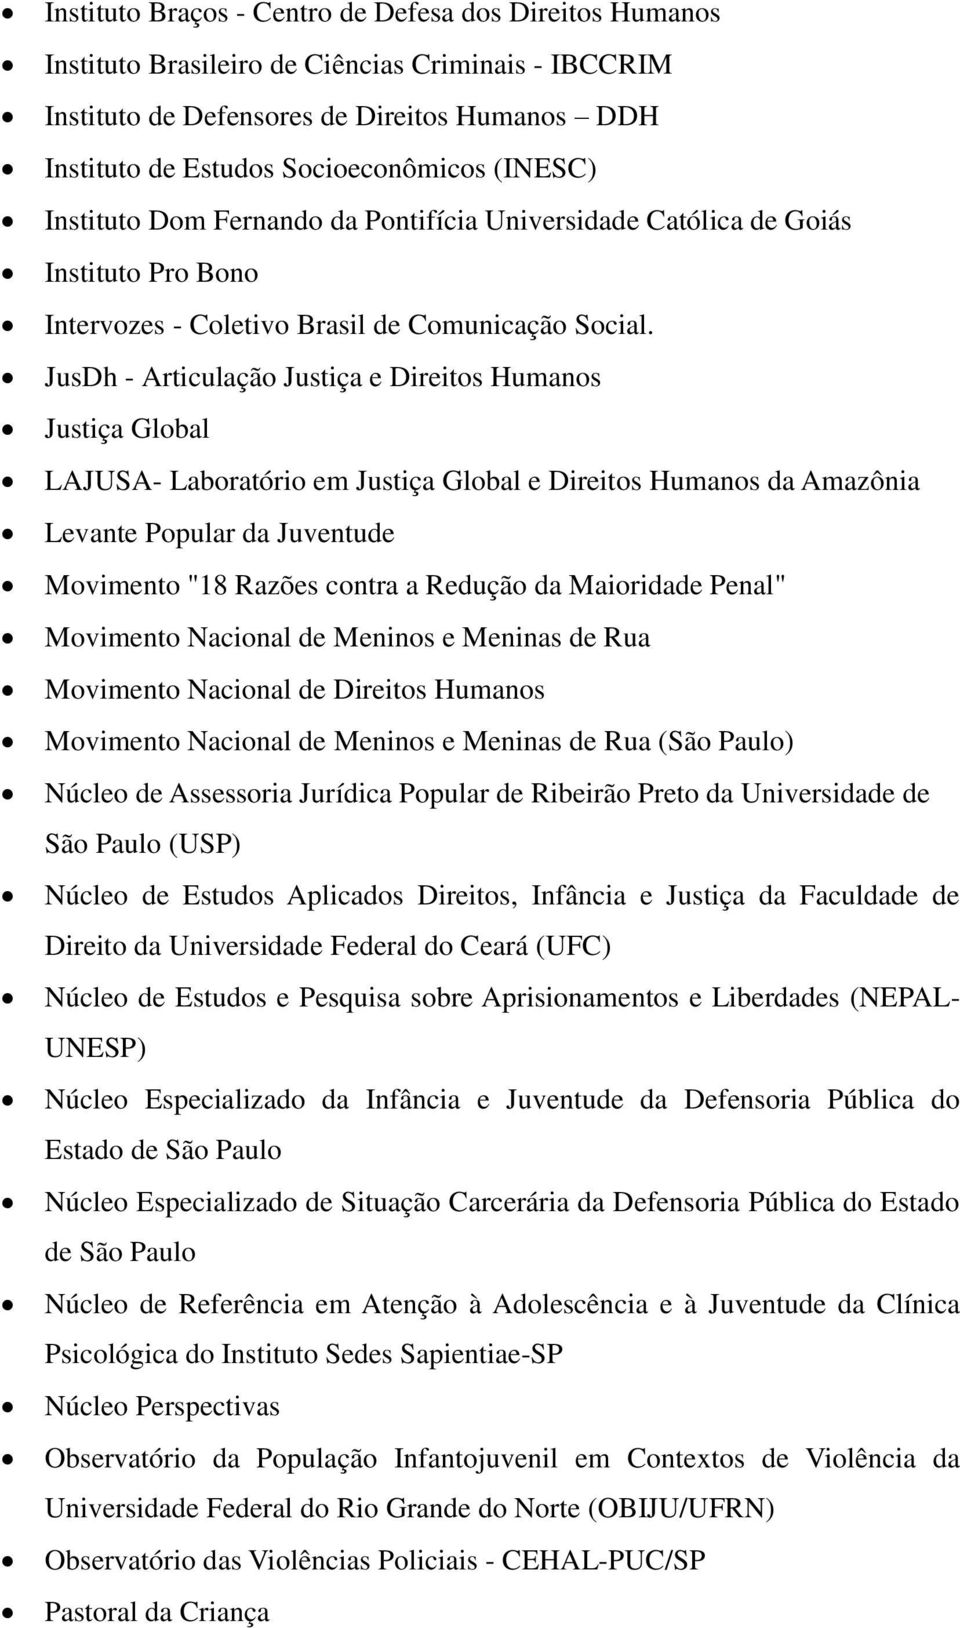 JusDh - Articulação Justiça e Direitos Humanos Justiça Global LAJUSA- Laboratório em Justiça Global e Direitos Humanos da Amazônia Levante Popular da Juventude Movimento "18 Razões contra a Redução